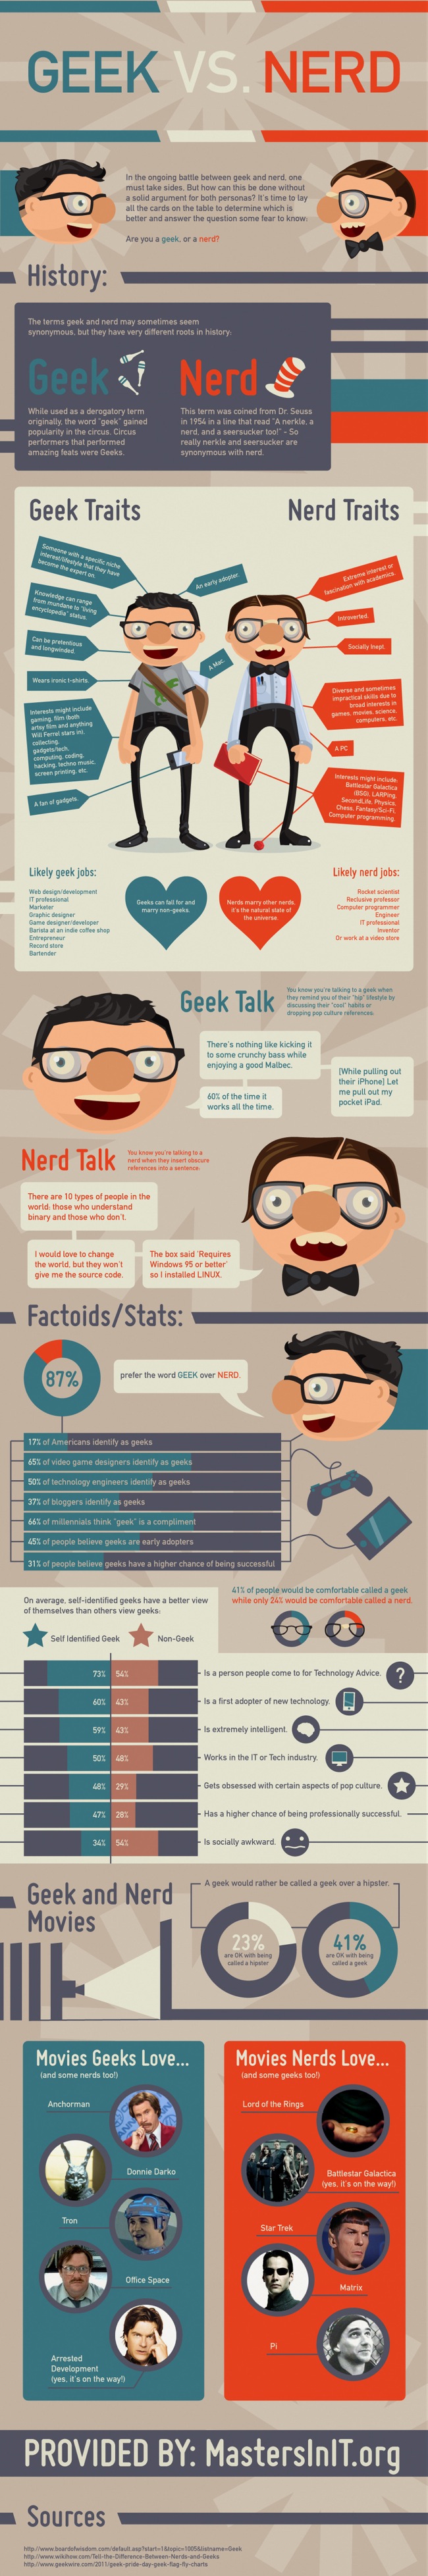 Geek vs. Nerd infographic